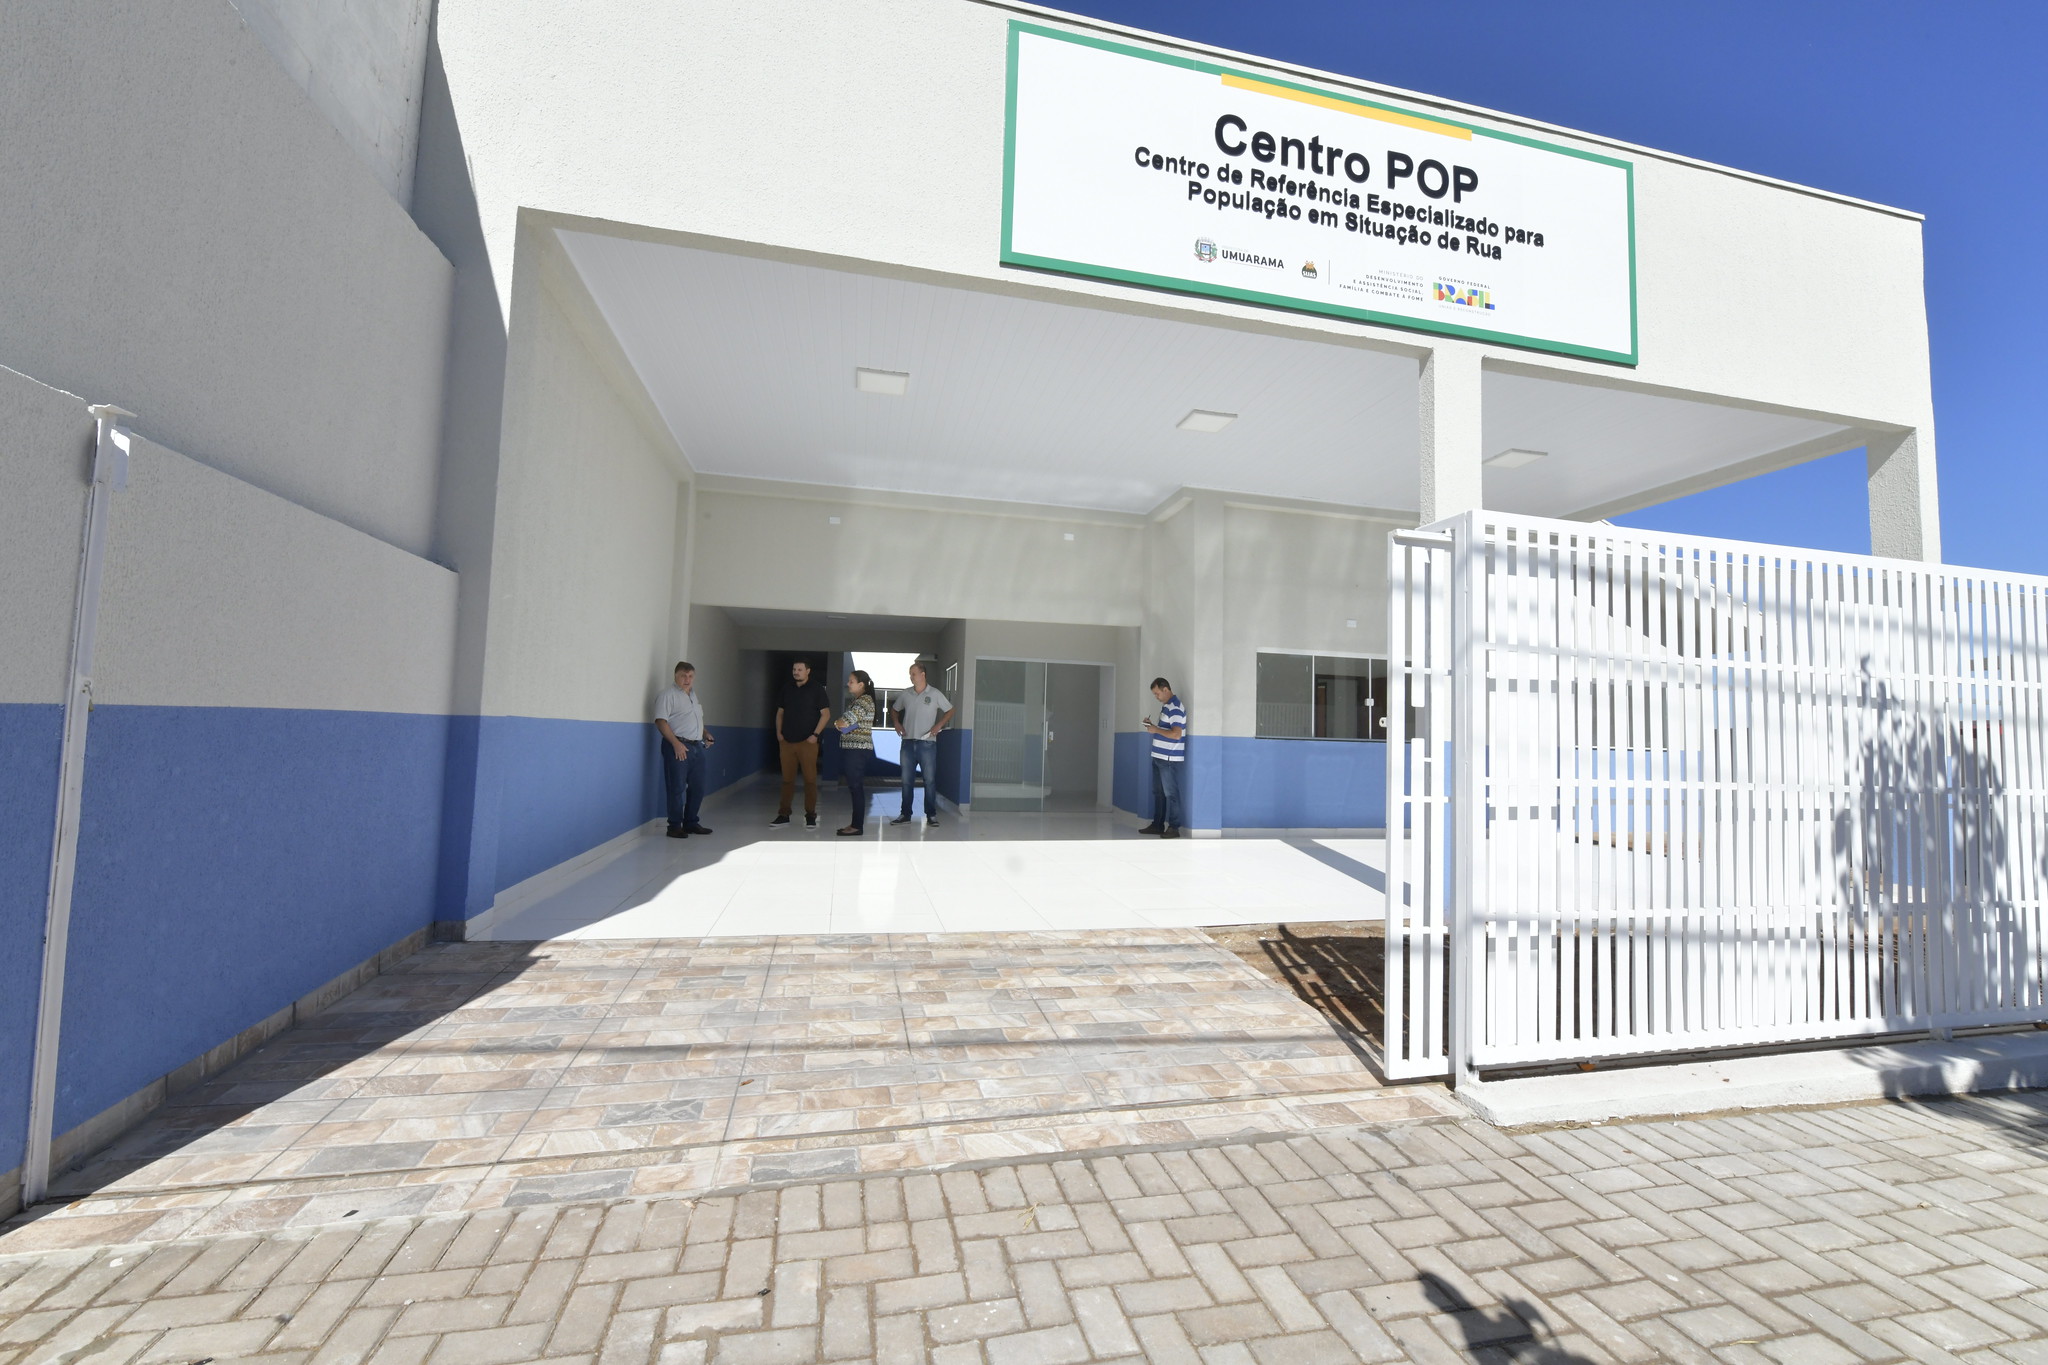 Jornal Ilustrado - Centro Pop fecha na próxima segunda-feira para transferência ao novo endereço